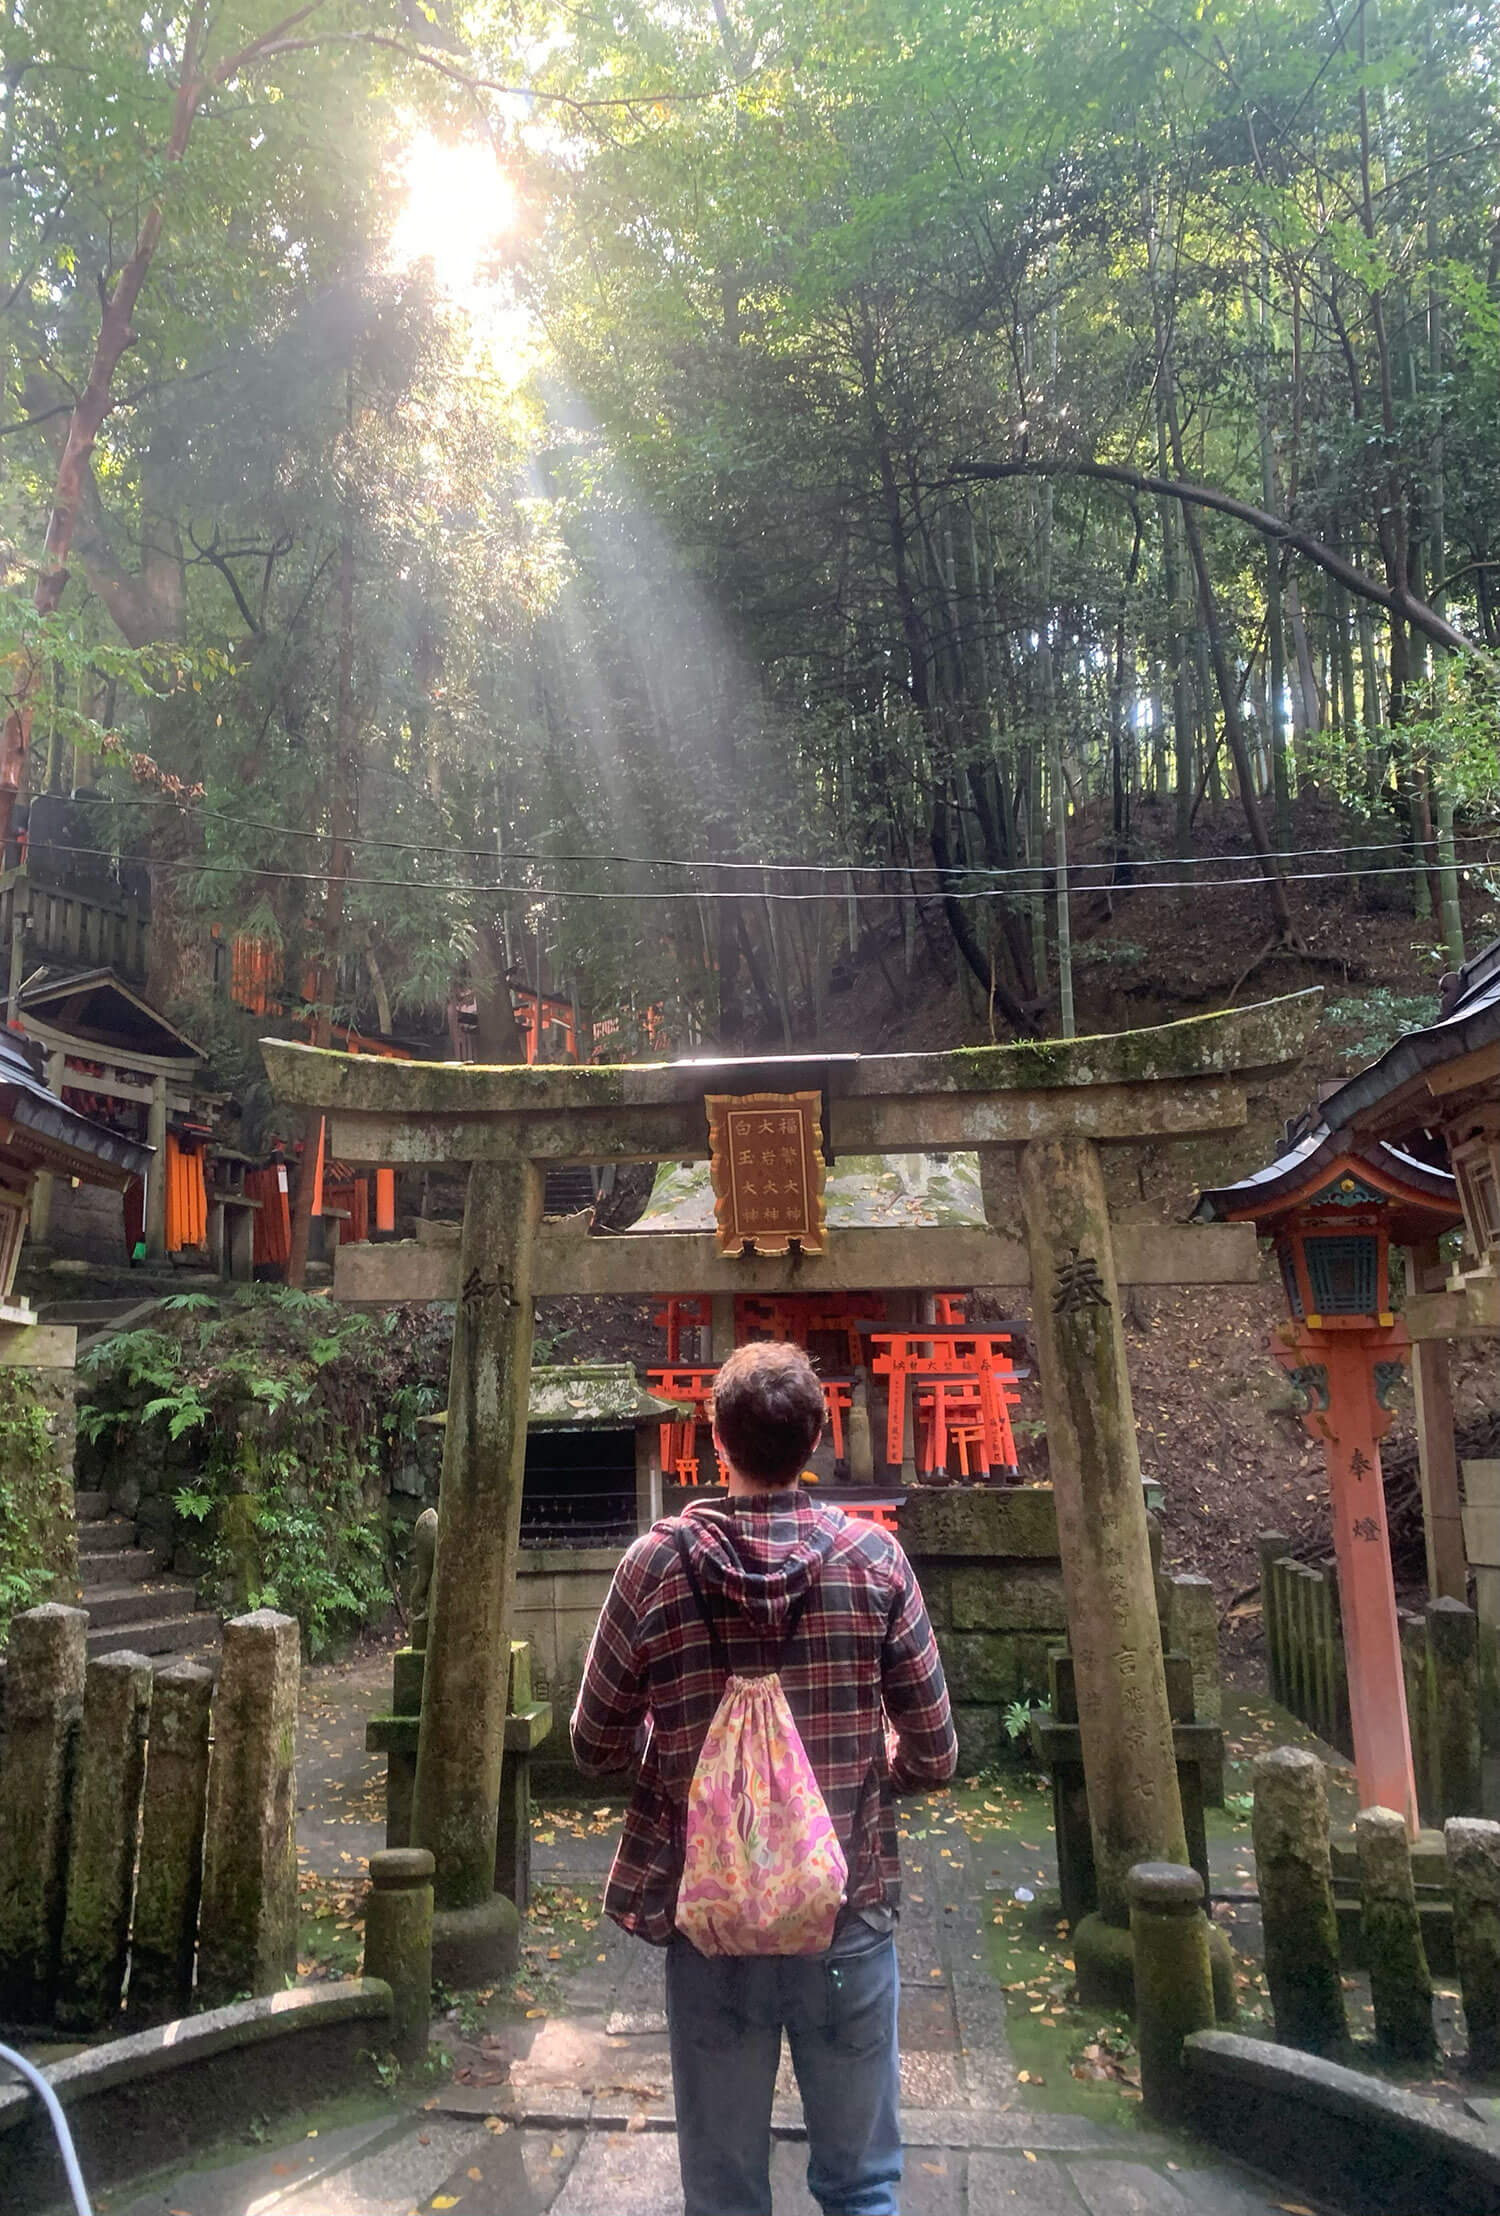 A Shinto Shrine